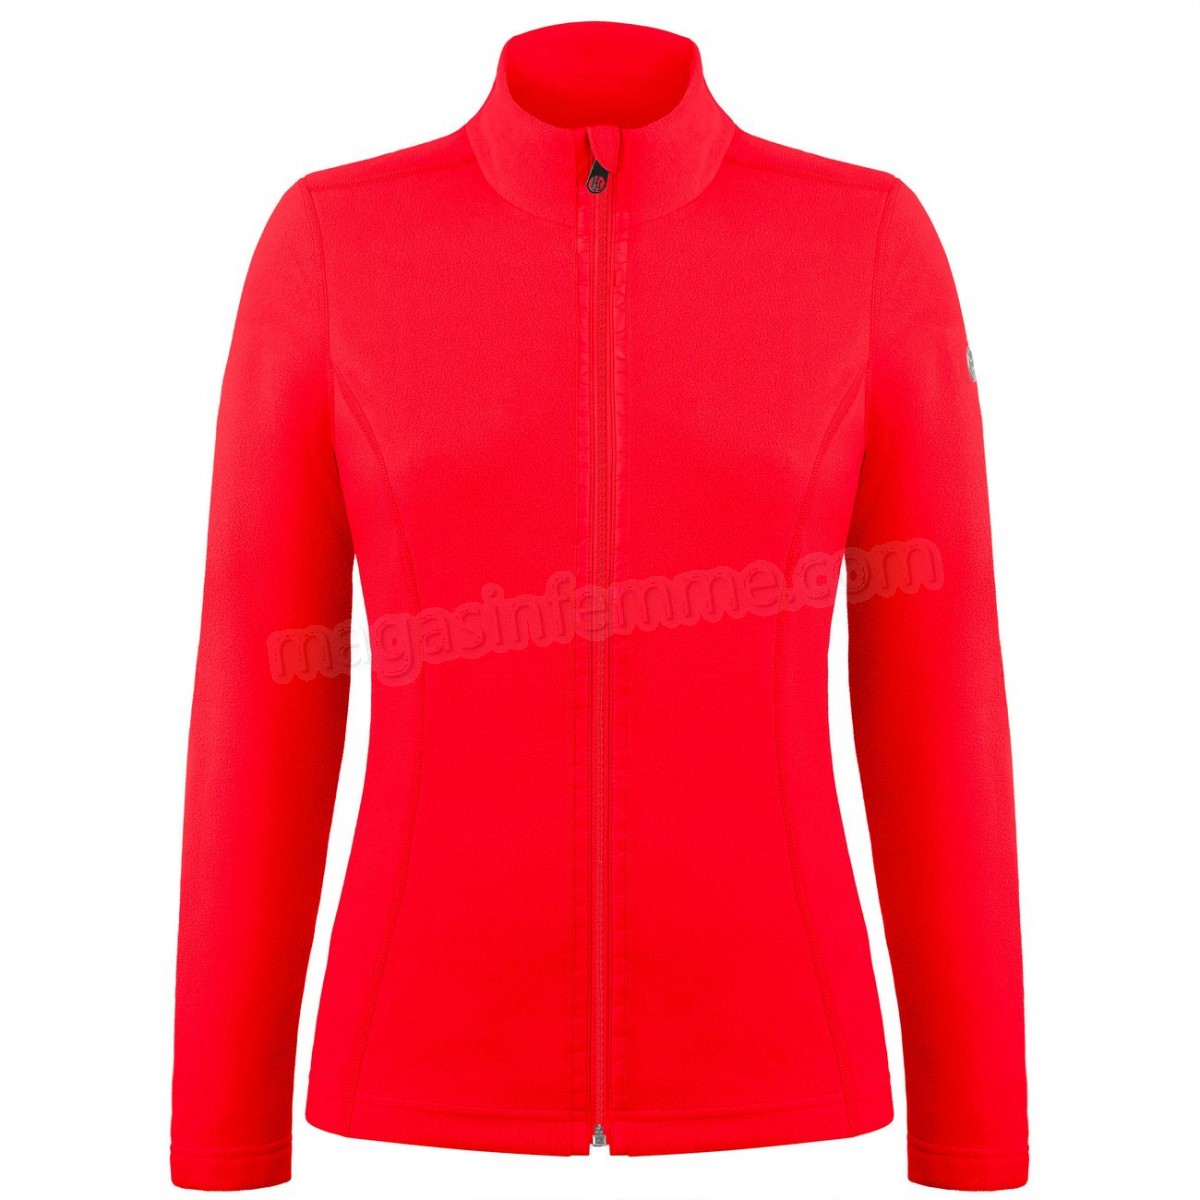 Poivre Blanc-Sports d'hiver femme POIVRE BLANC Veste Polaire Poivre Blanc Fleece Jacket 1500 Scarlet Red 5 Femme en solde - -0